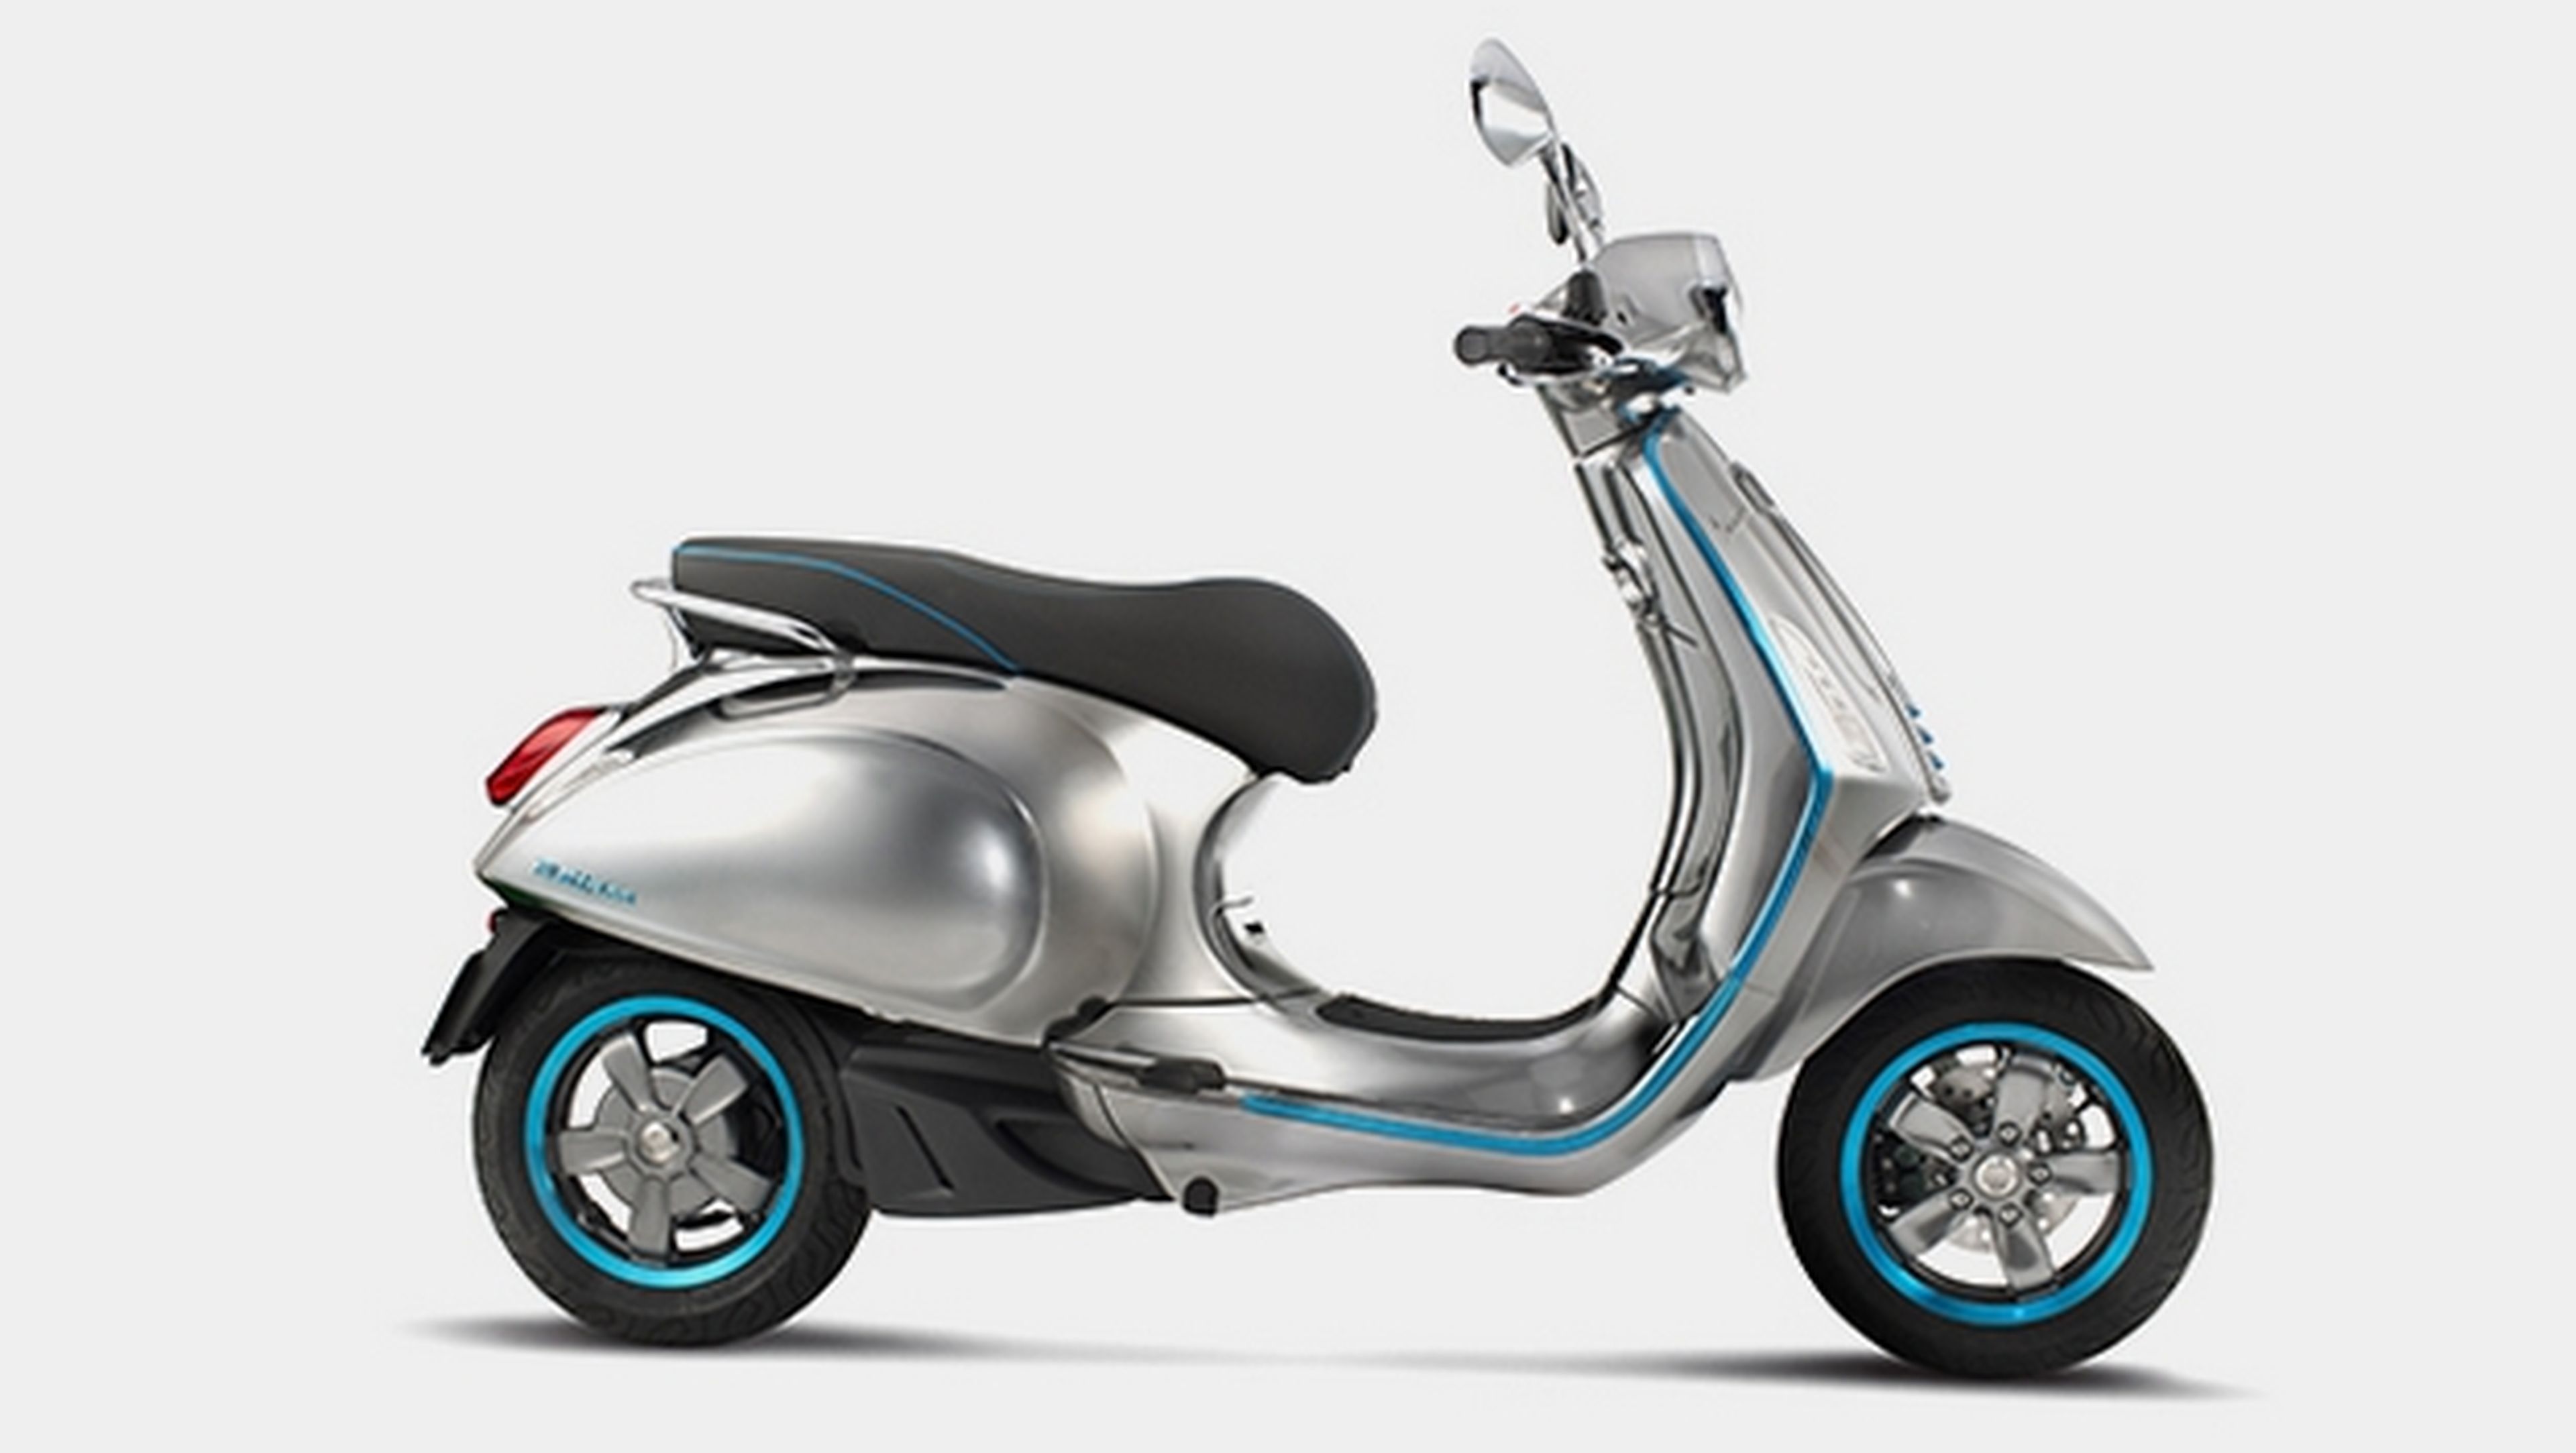 La mítica moto Vespa regresa en versión eléctrica